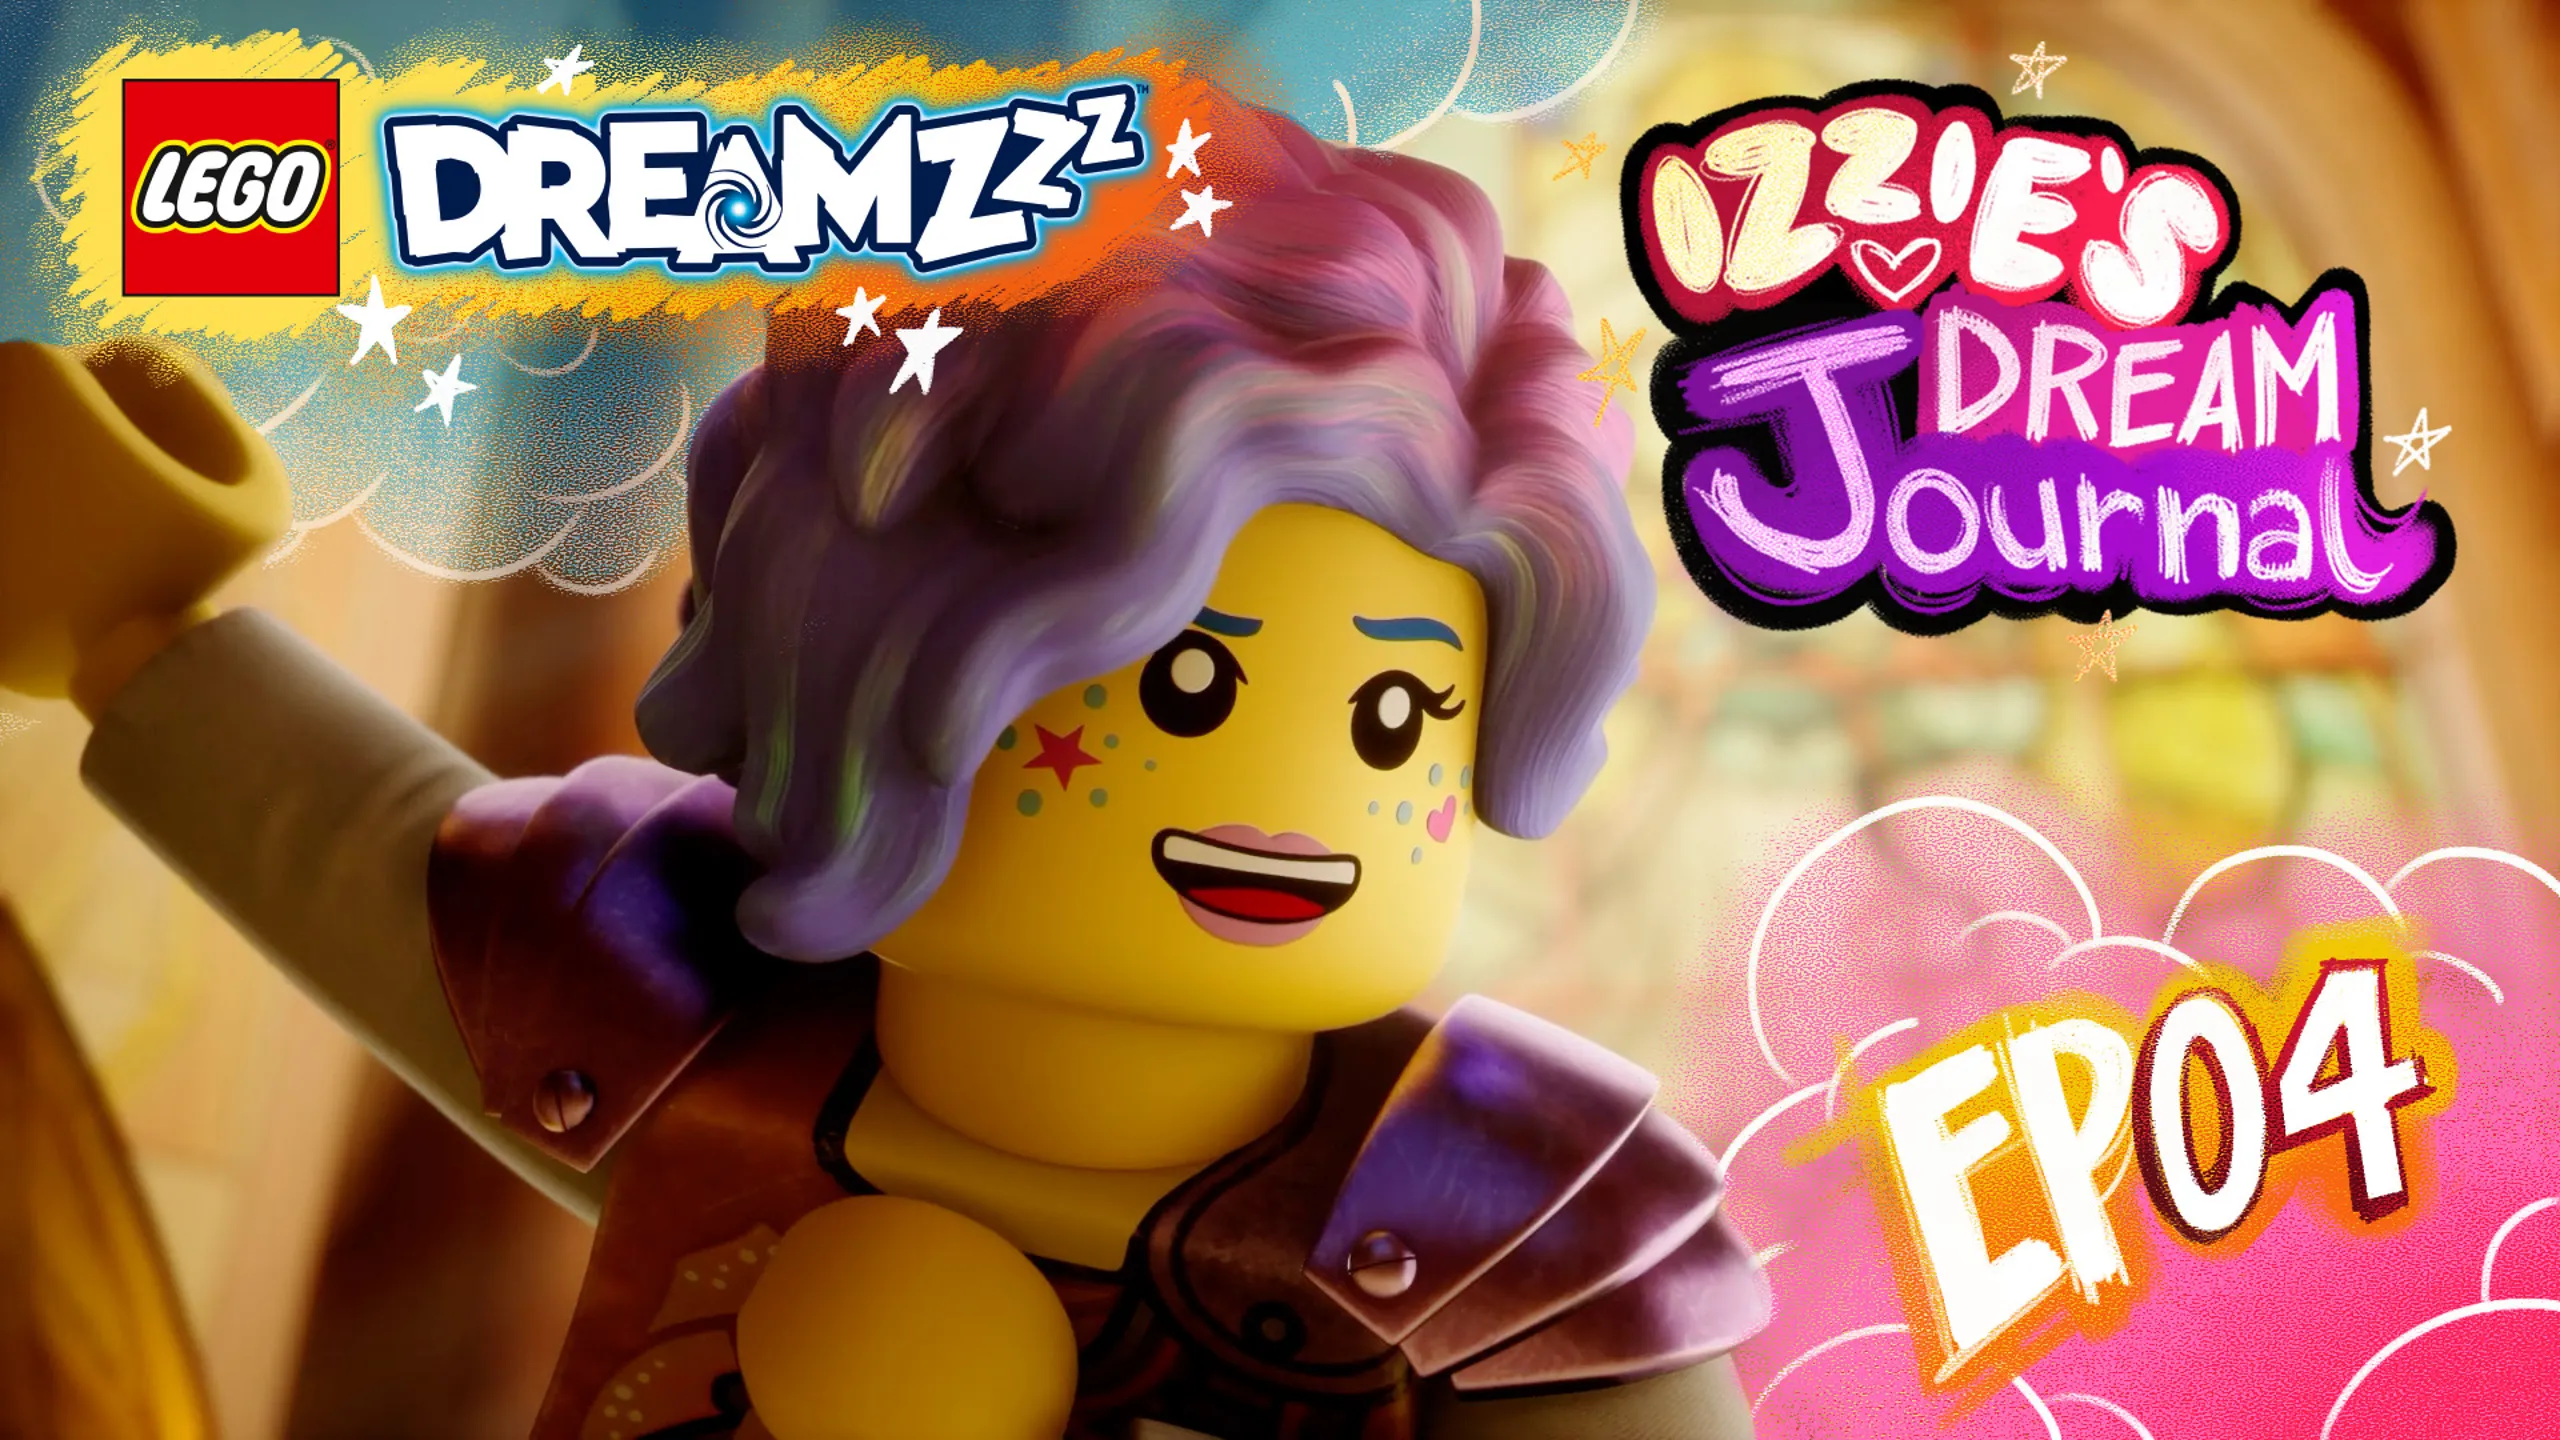 LEGO® DREAMZZZ - IZZIE'S DREAM Journal - EP04